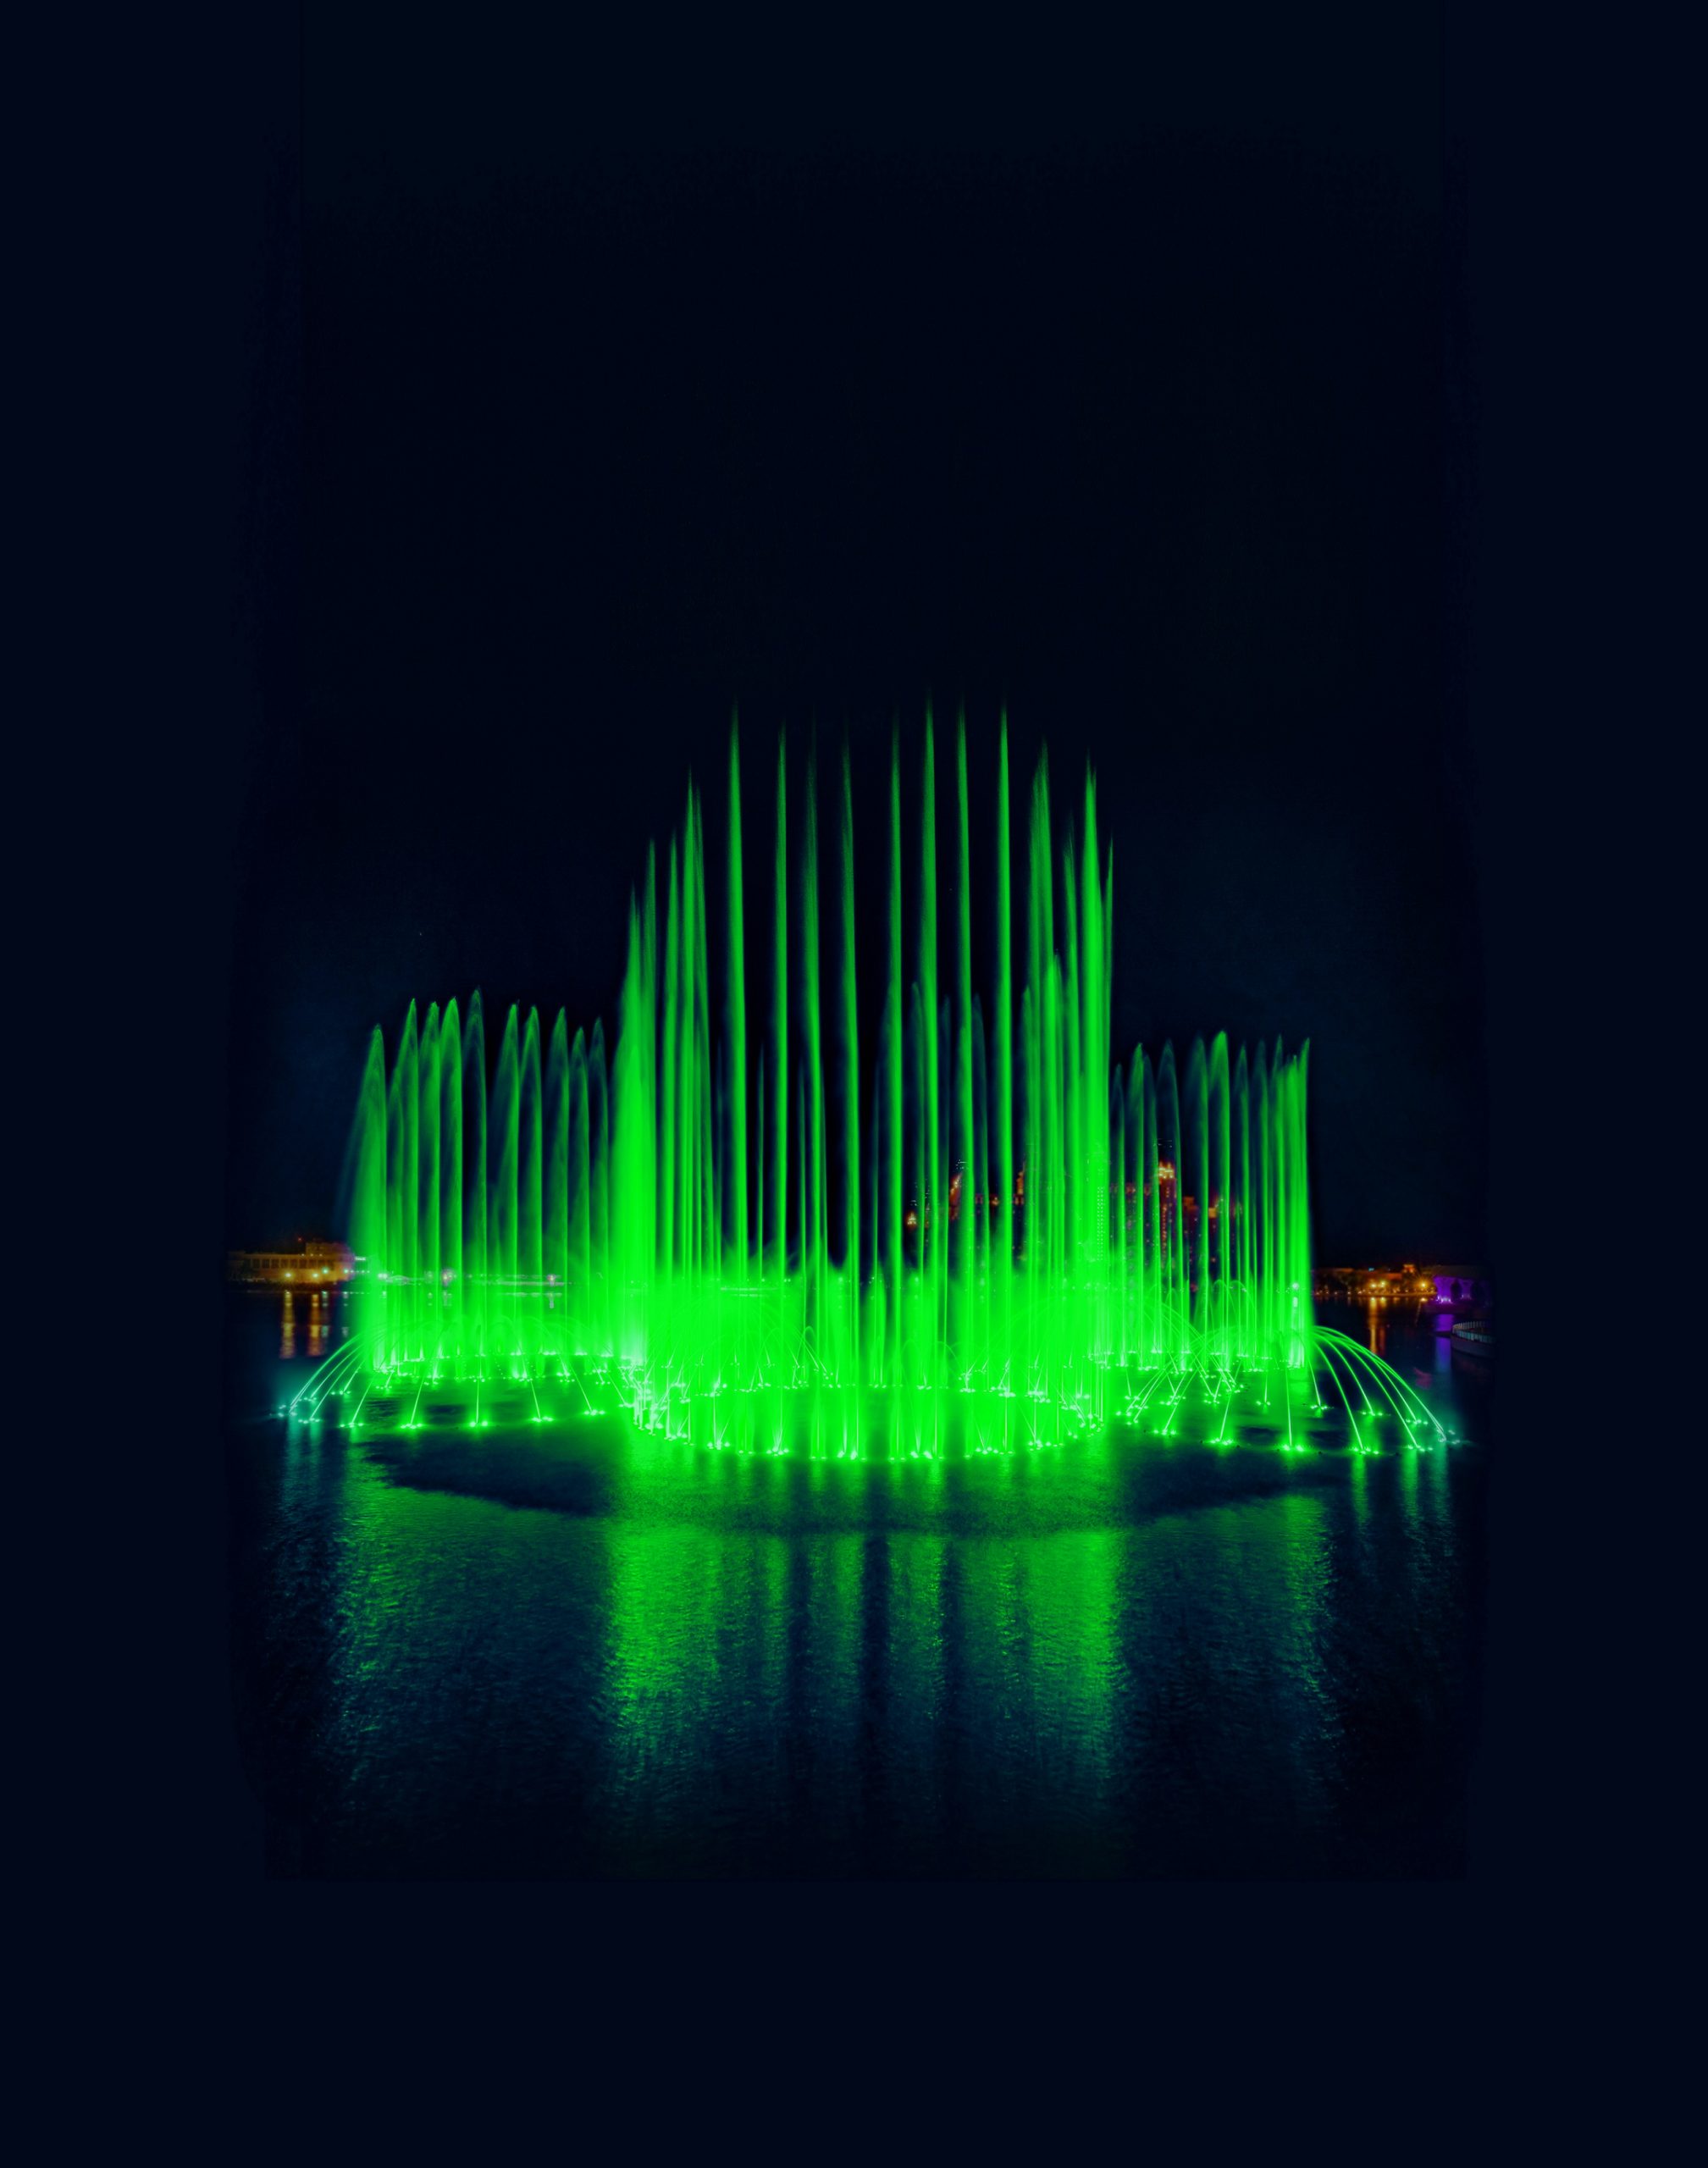 نخلة جميرا تضيء أكبر نافورة في العالم باللون الأخضر احتفالاً باليوم الوطني الأيرلندي (3)